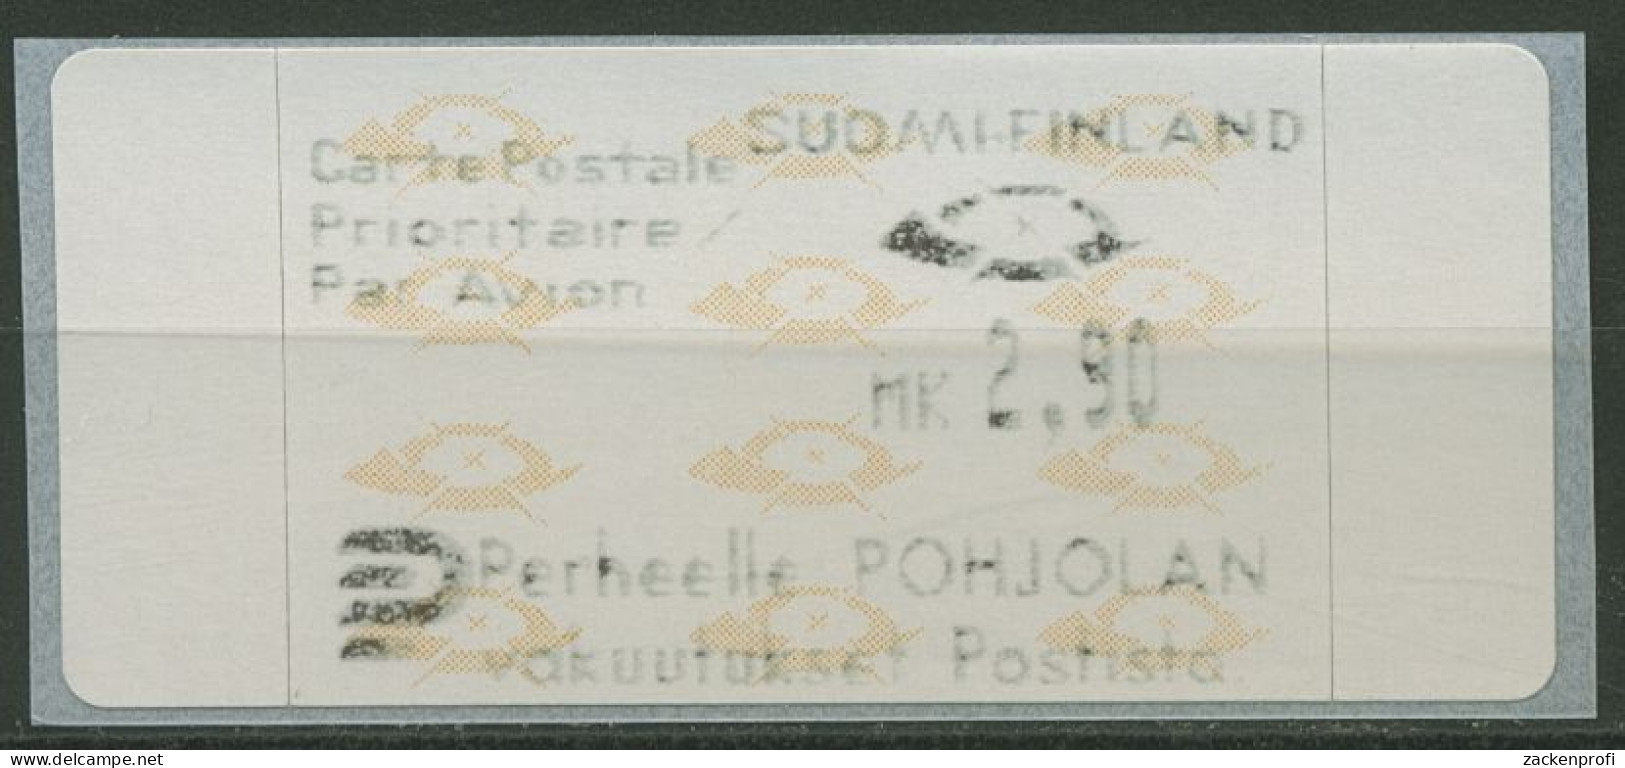 Finnland Automatenmarken 1992 Posthörner Einzelwert ATM 12.3 Z3 Postfrisch - Vignette [ATM]